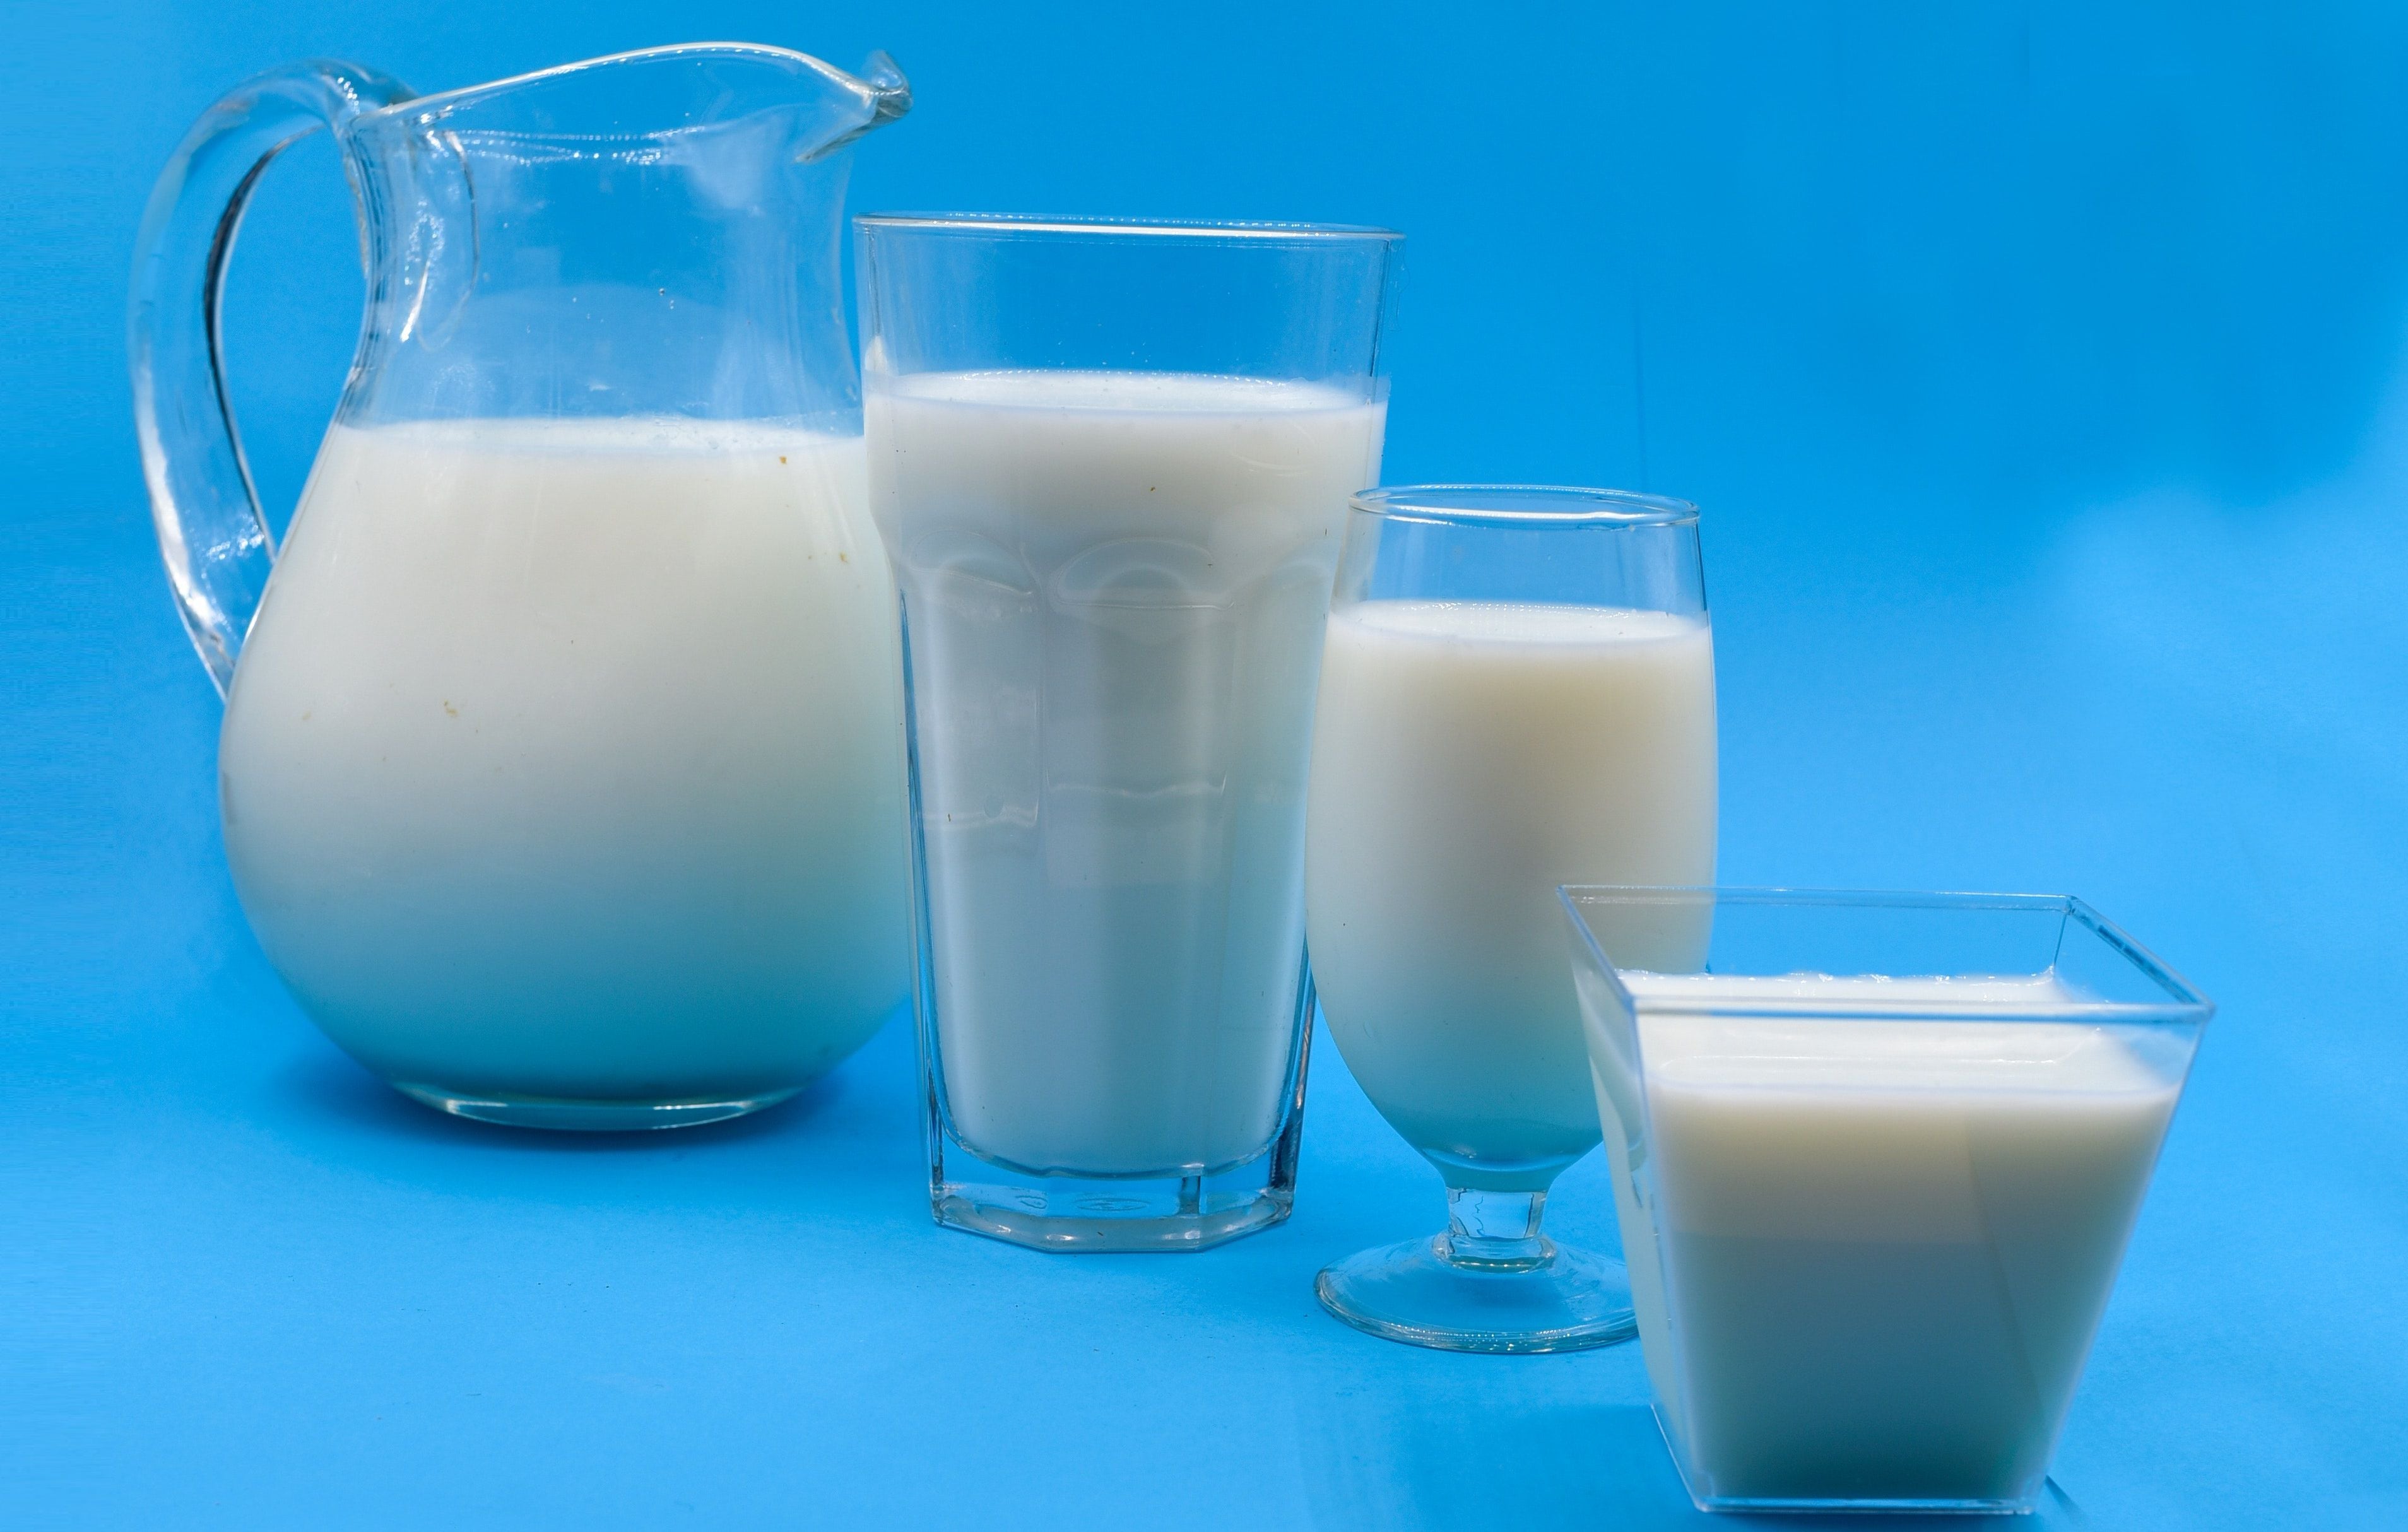 “Otra gran ventaja de los lácteos es el contenido de calcio, no por la cantidad, sino porque es el calcio que el cuerpo mejor absorbe y es fuente de vitamina D, escaso en los alimentos”, explica la experta en nutrición. (Foto: Pexel)